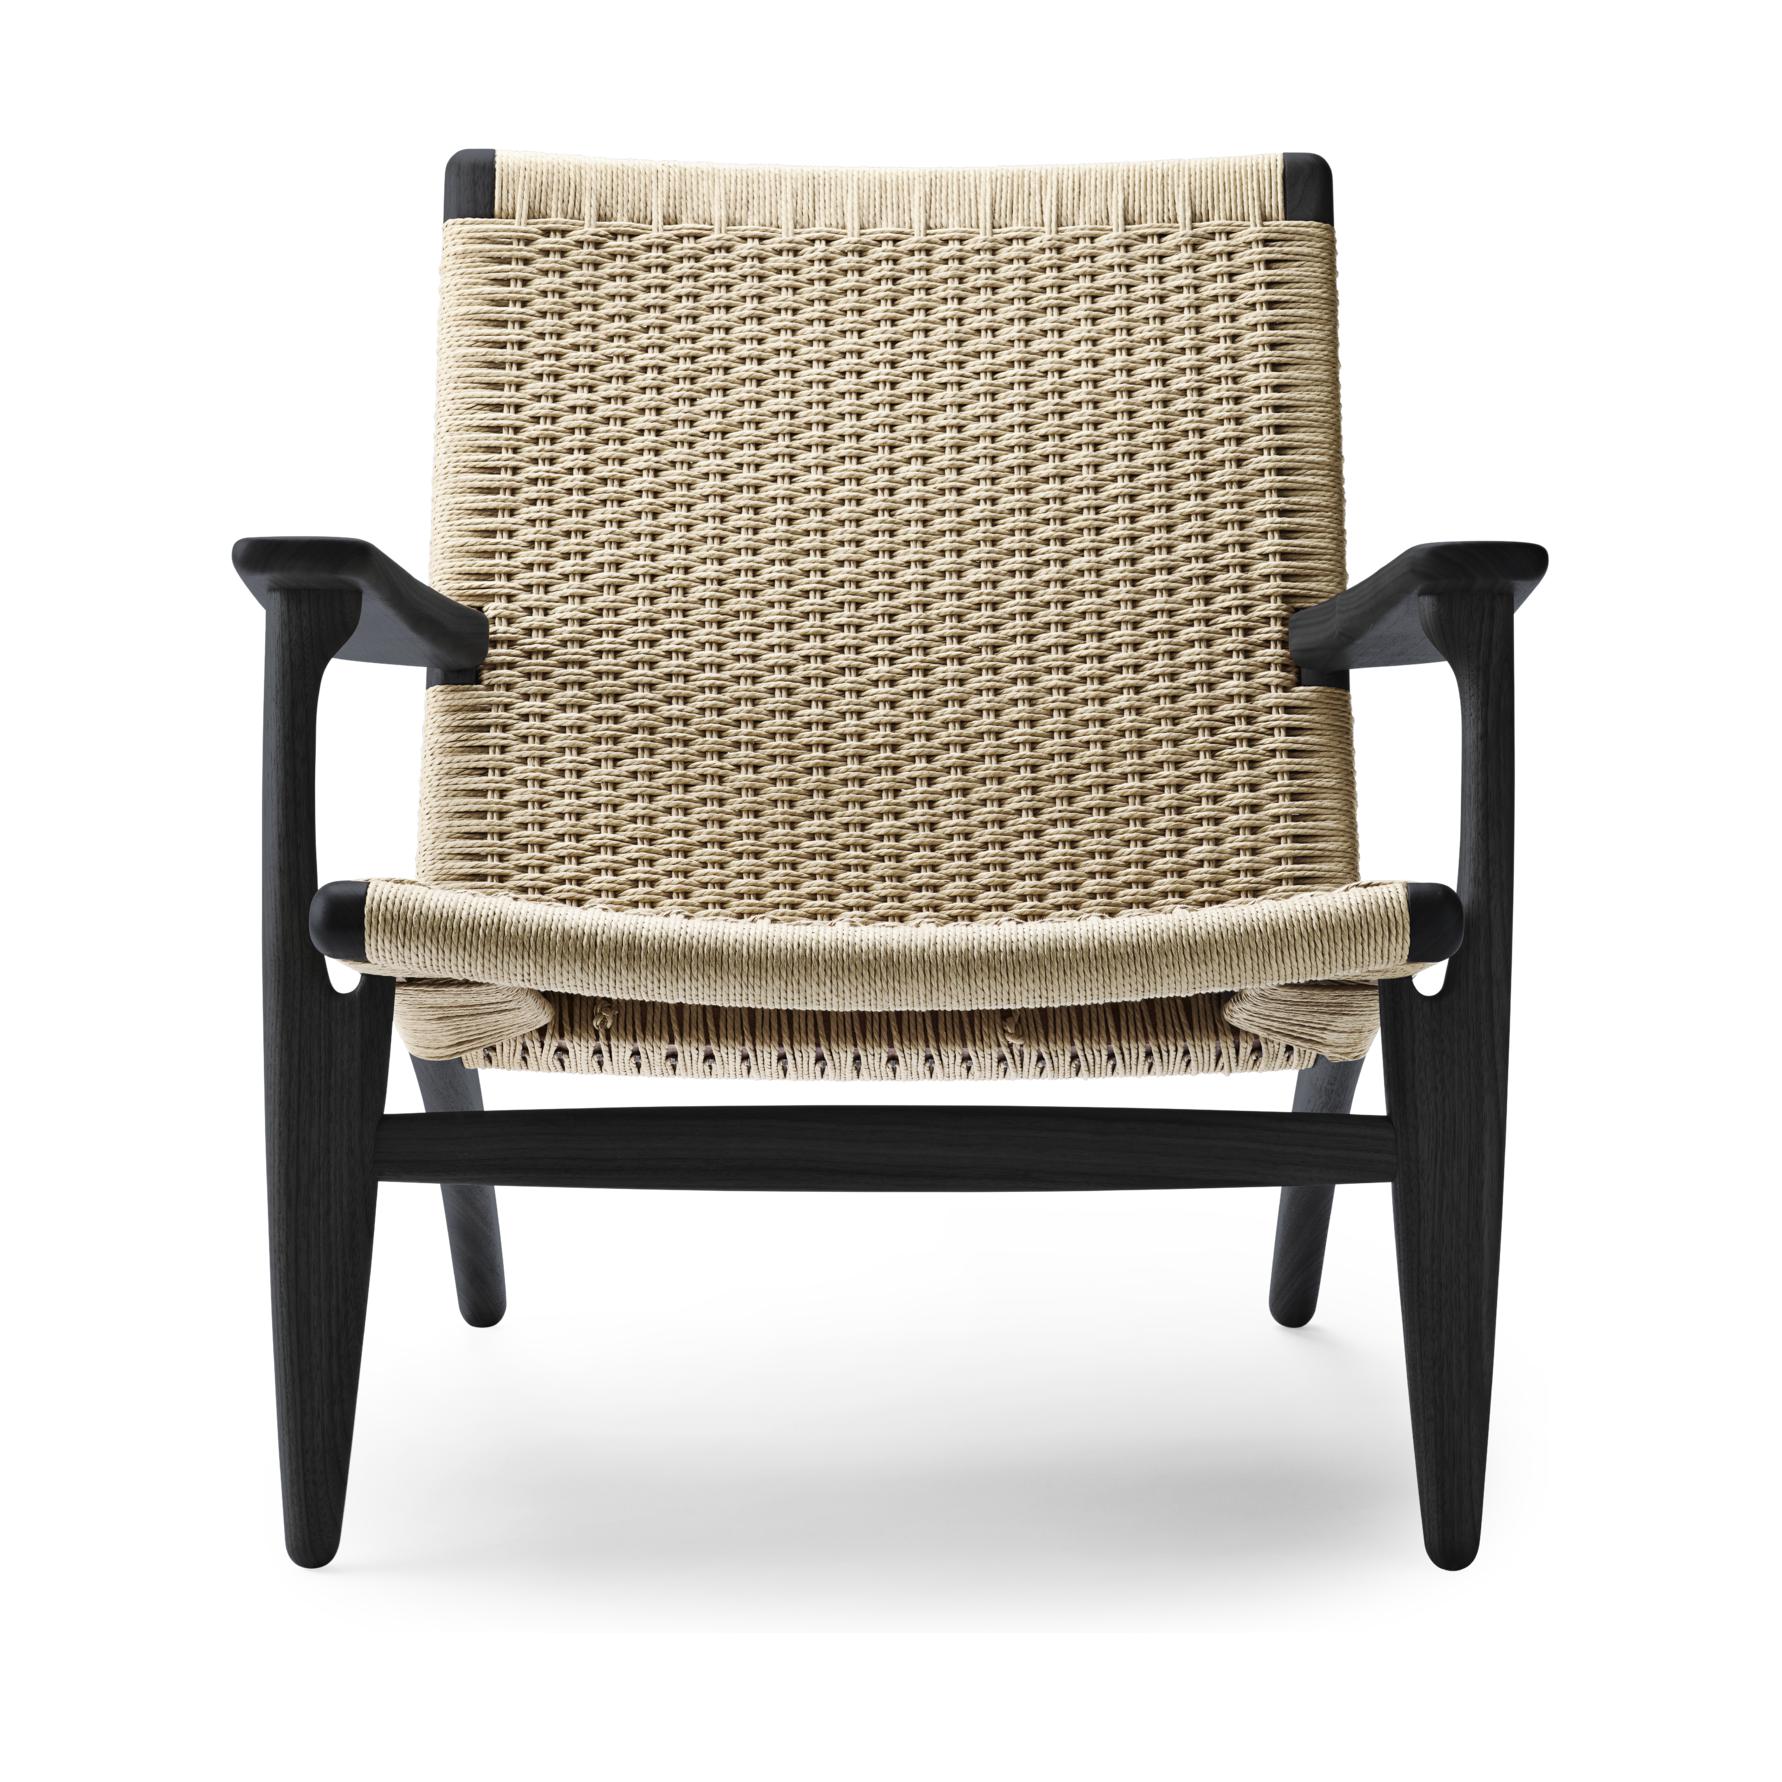 Carl Hansen CH25 Lounge -stol, färgad ek/naturlig sladd